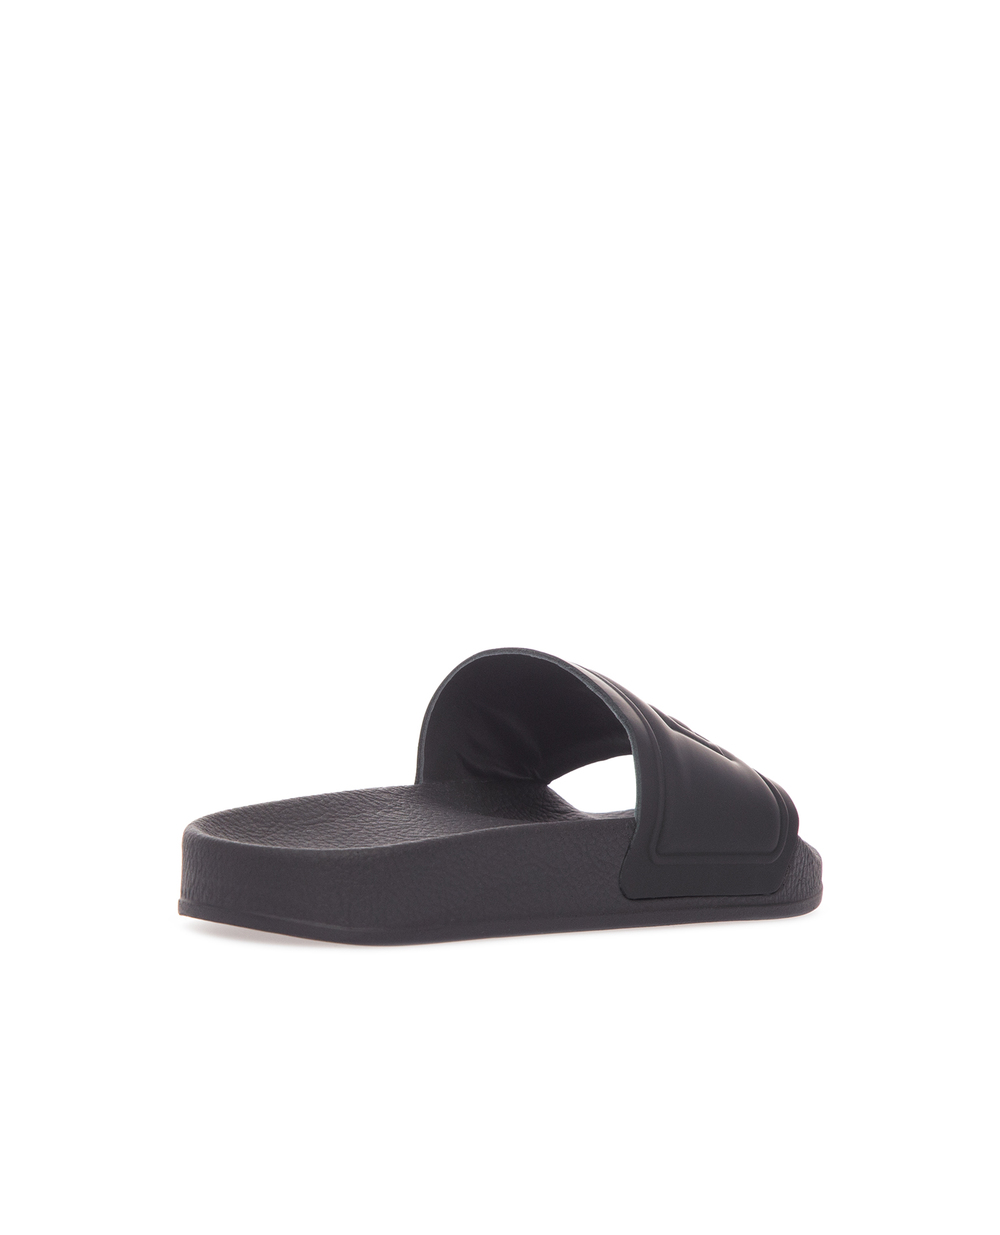 Слайдеры Dolce&Gabbana DD0318-AX389-L, черный цвет • Купить в интернет-магазине Kameron